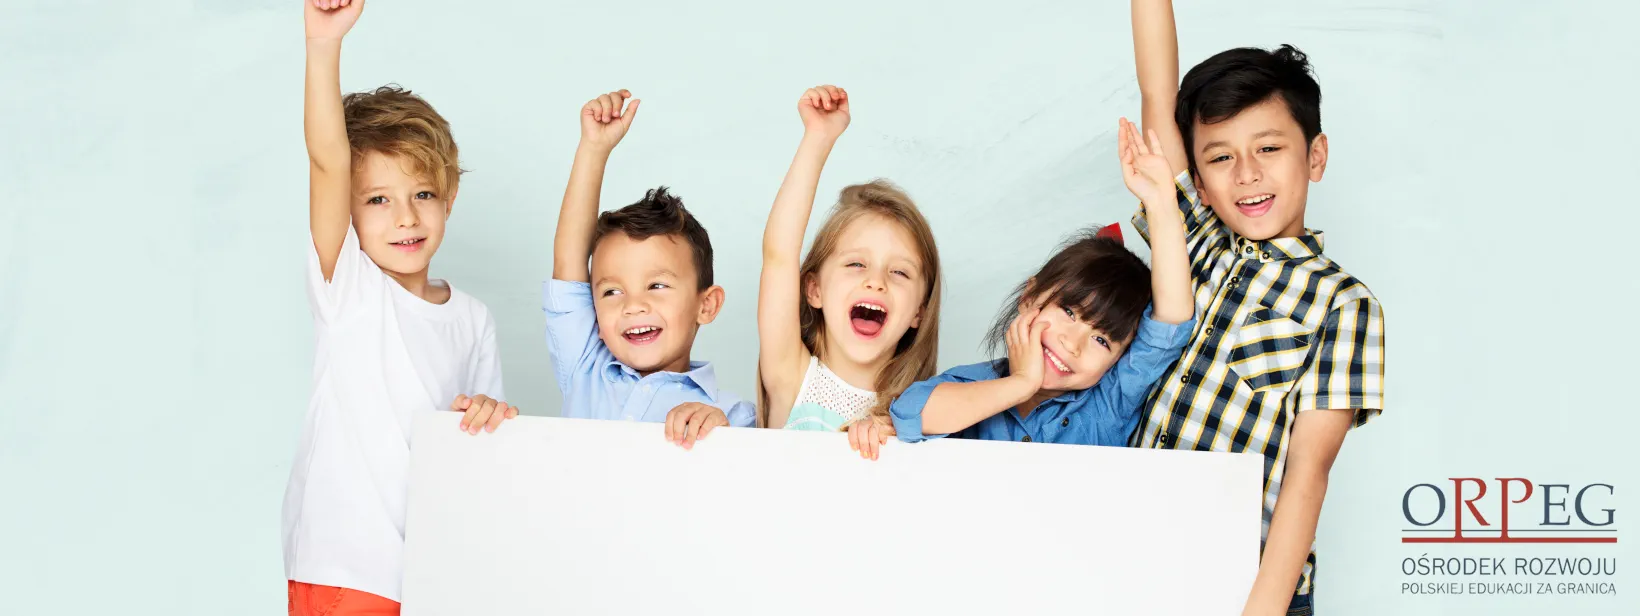 Pięcioro uśmiechniętych dzieci z podniesionymi rękami